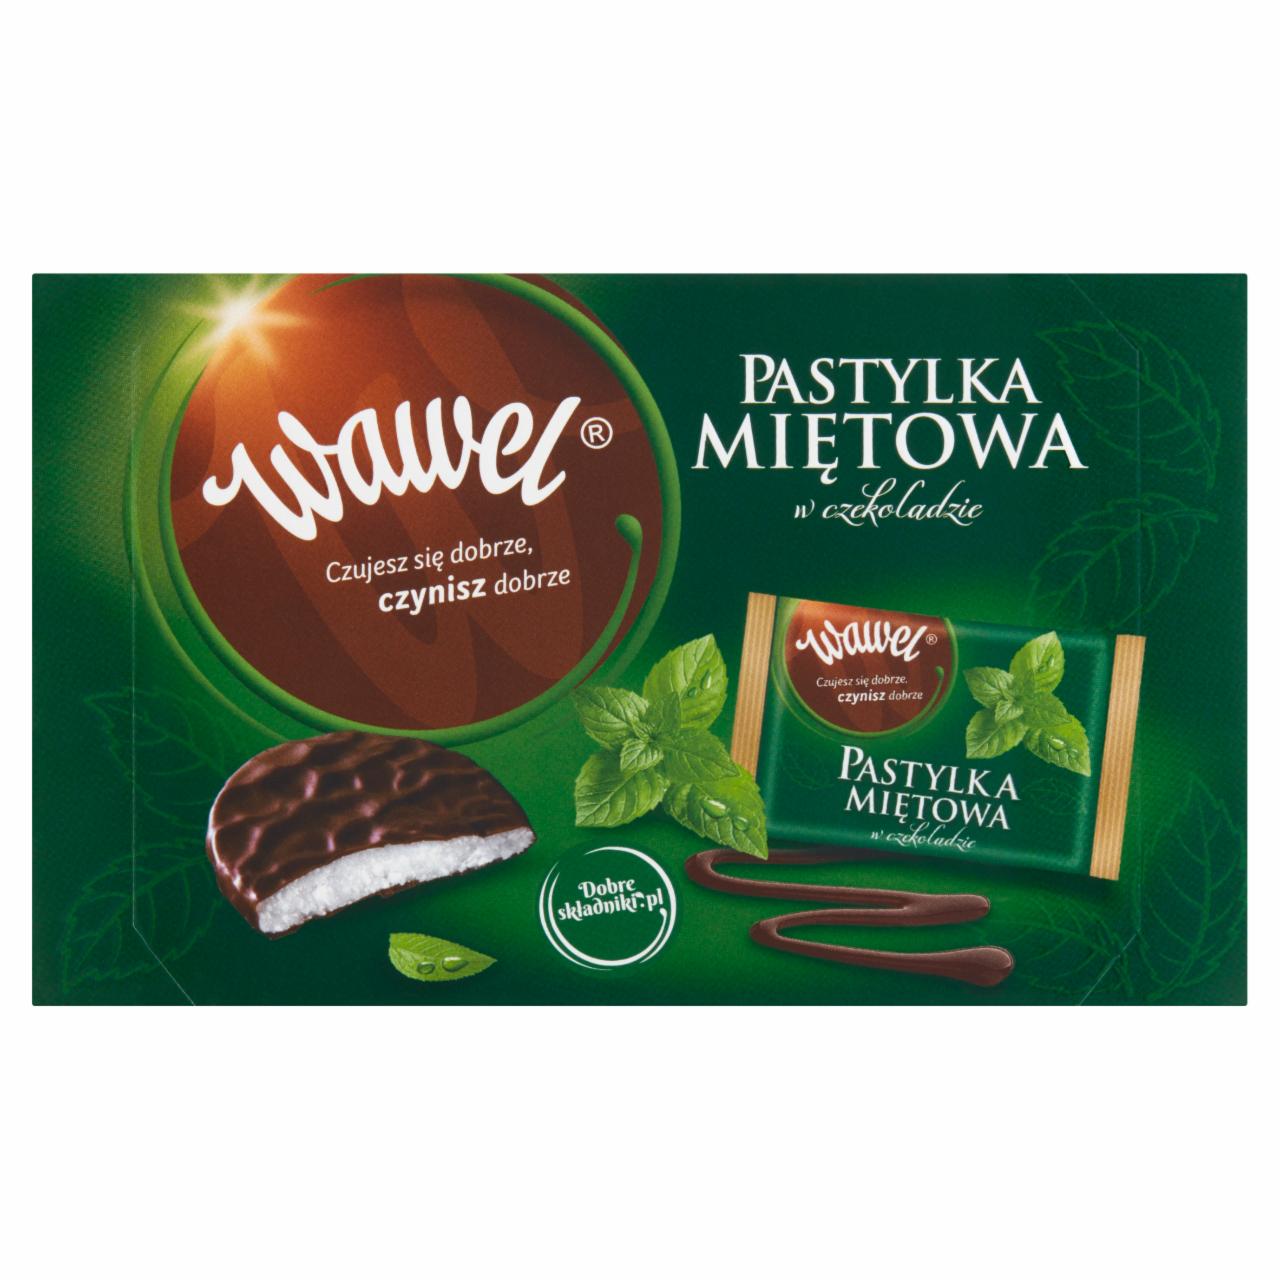 Zdjęcia - Wawel Pastylka miętowa w czekoladzie 210 g